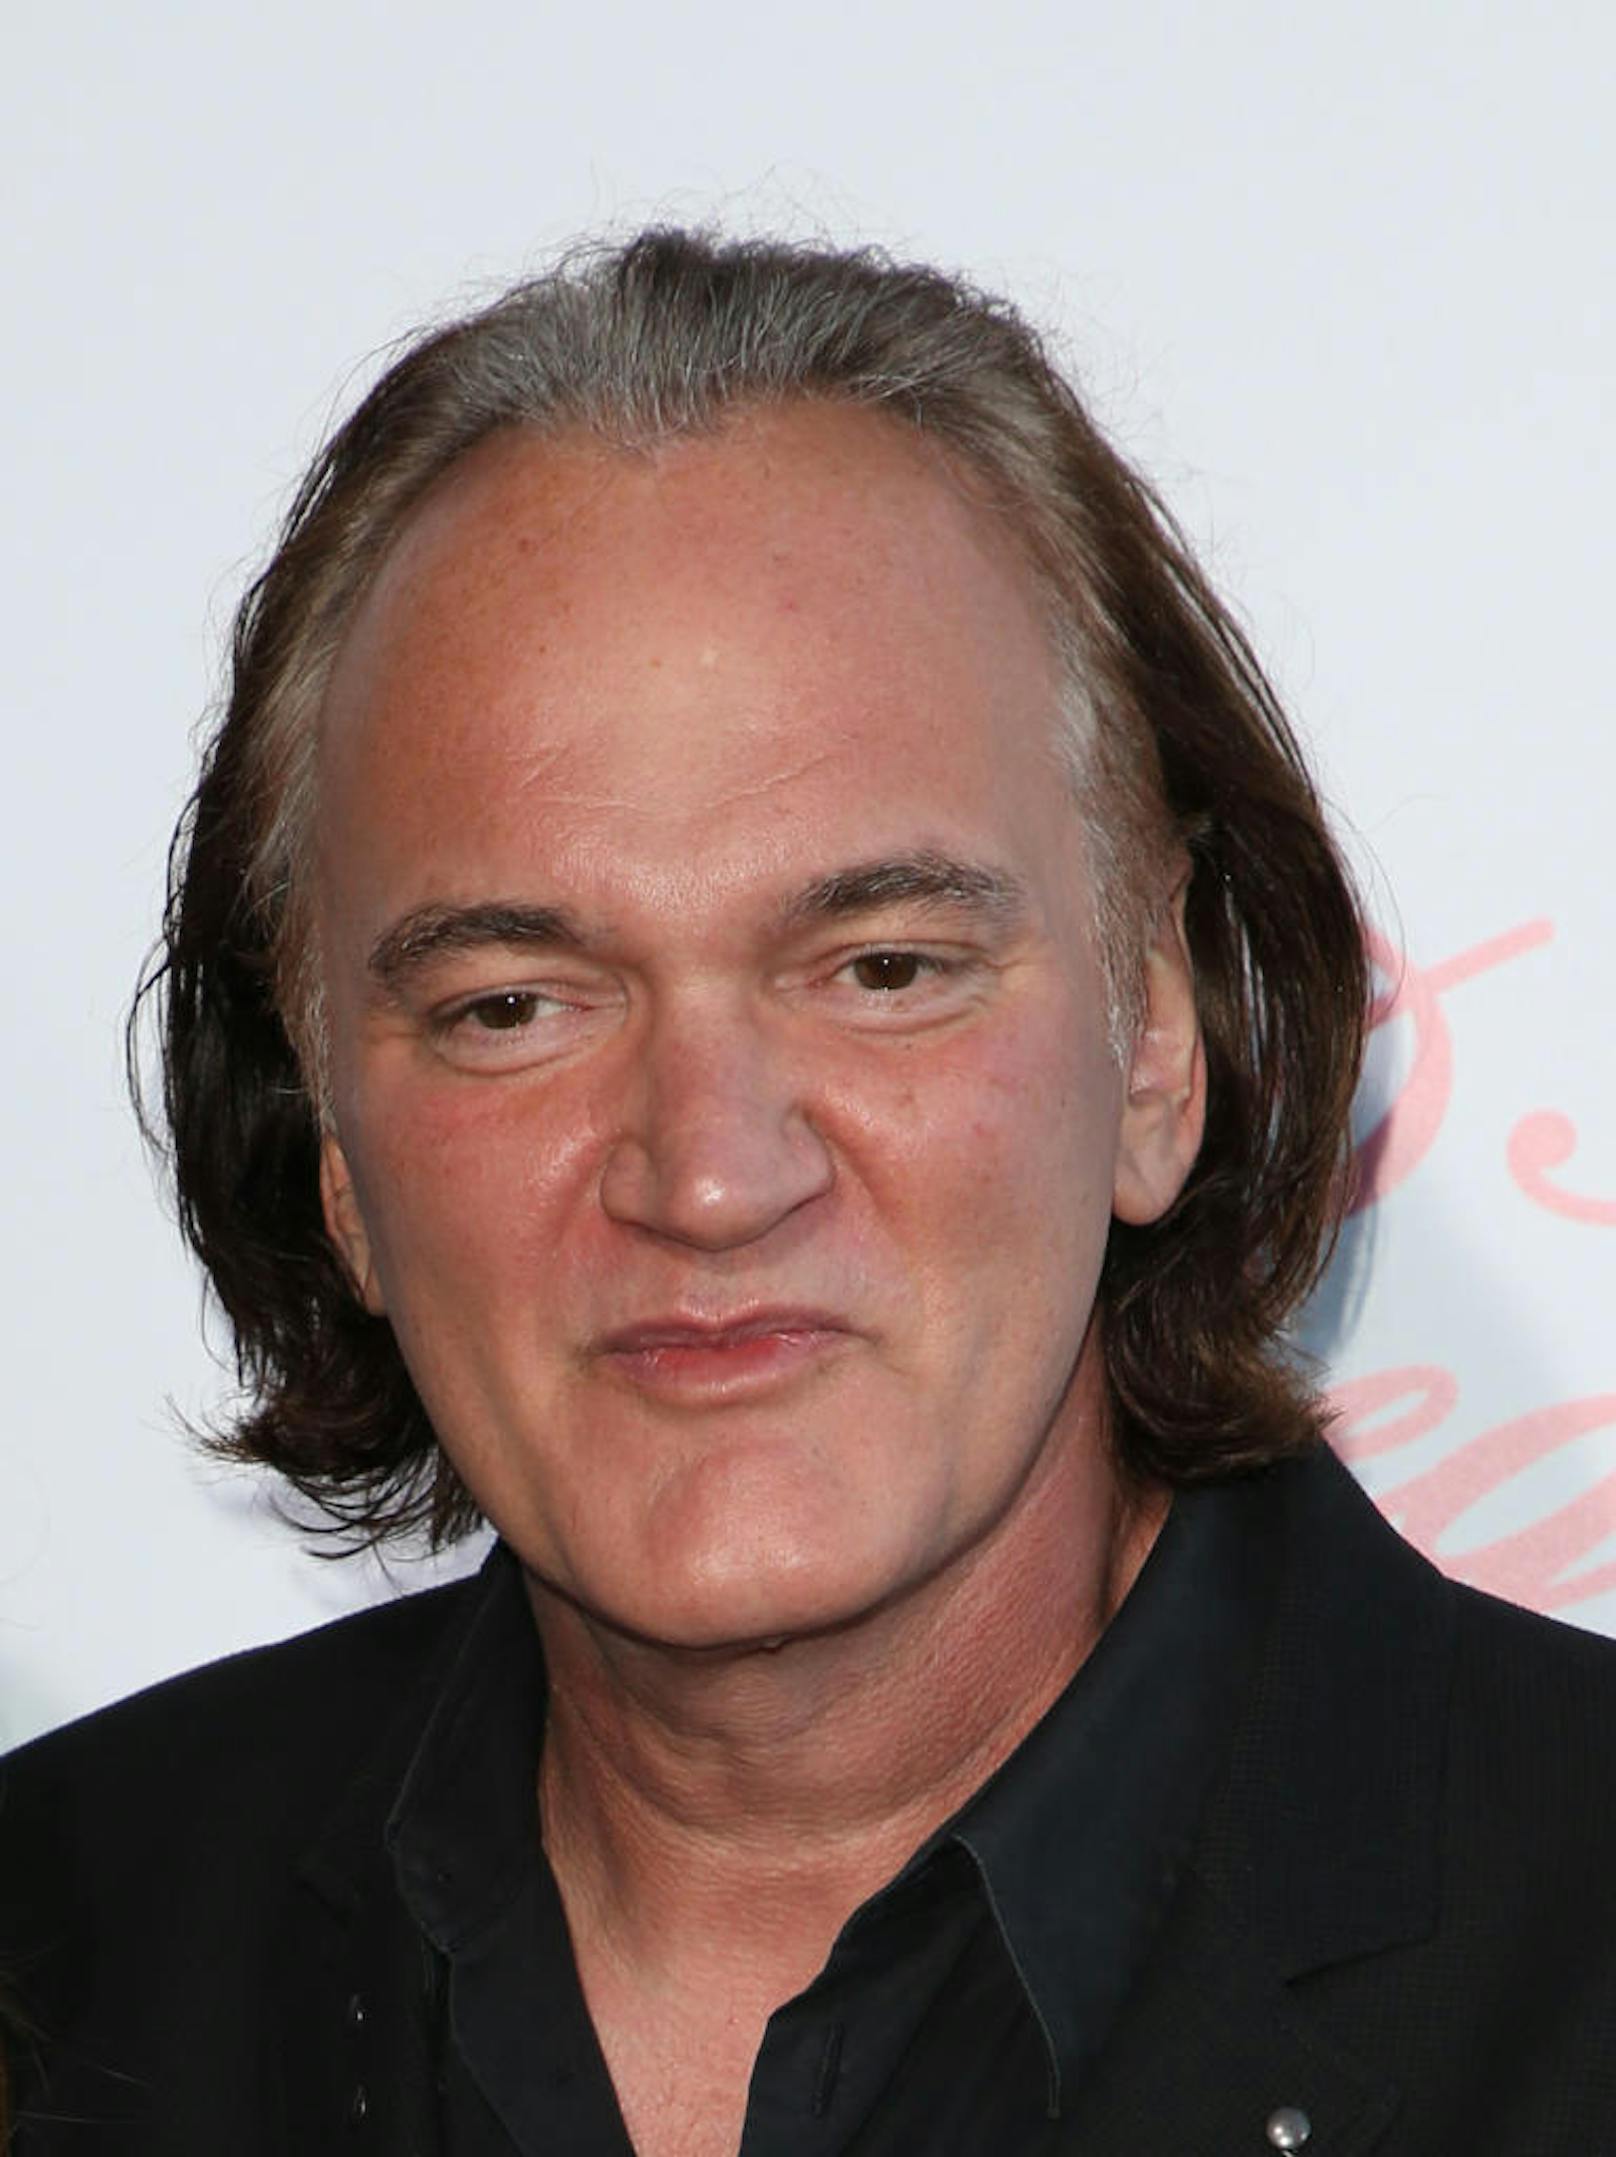 Quentin Tarantino bei der Premiere von "The Beguiled" 2017 